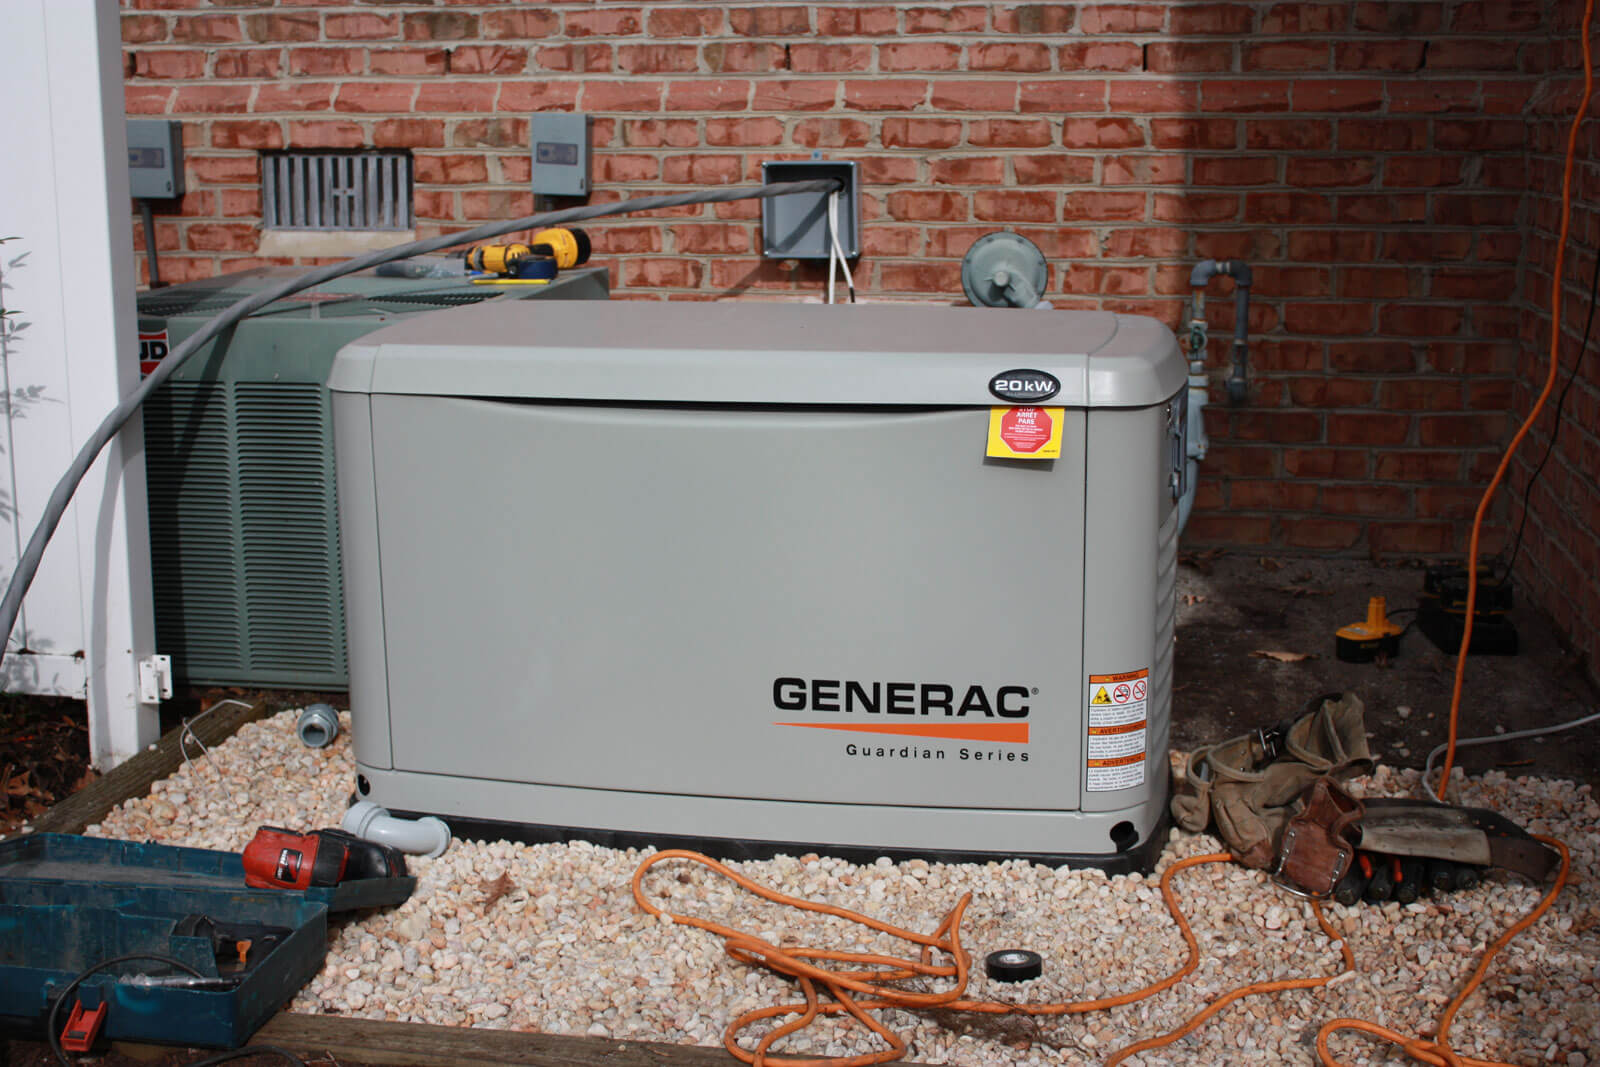 Газовые генераторы - популярный вид бесперебойного источника электропитания...